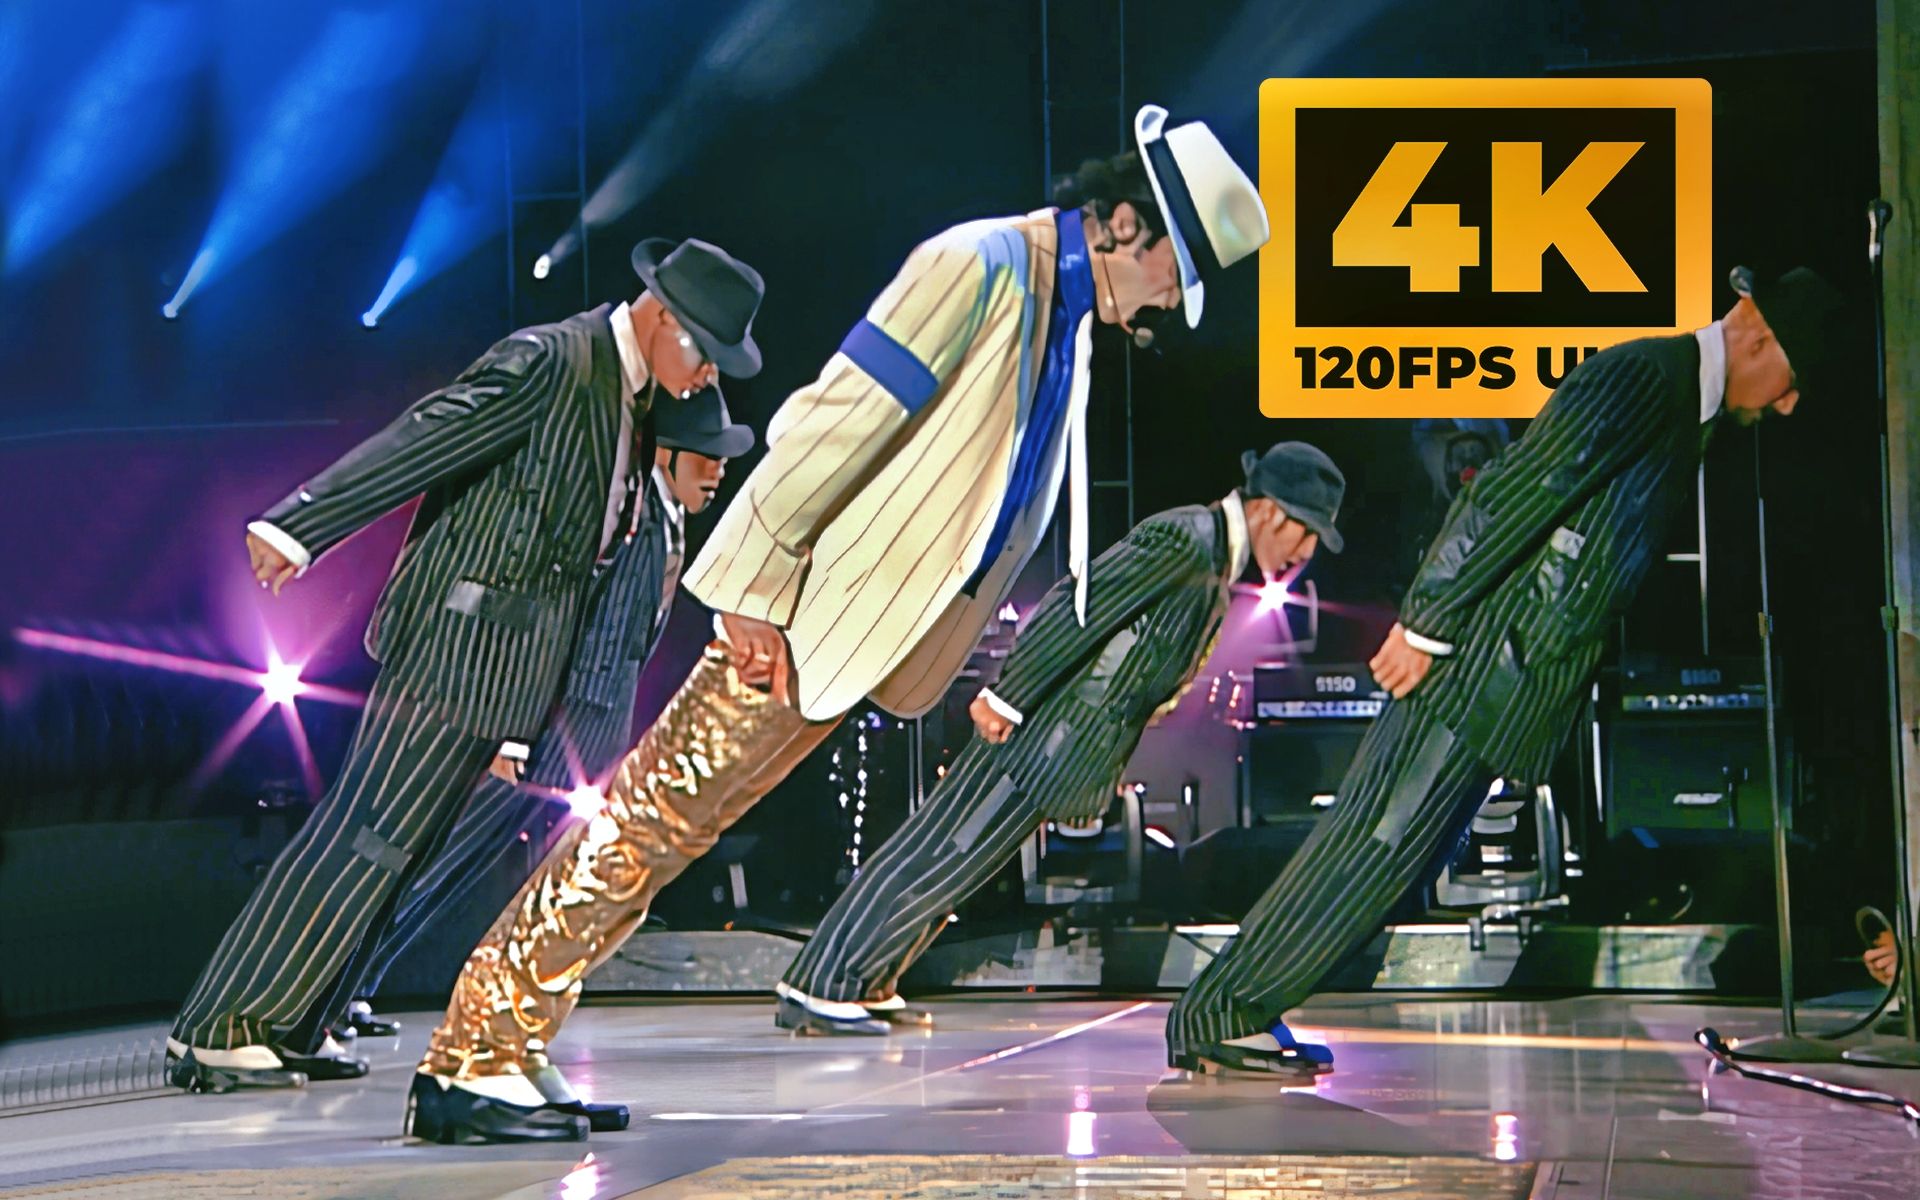 【𝟰𝗞𝟭𝟮𝟬𝗙𝗣𝗦丨超清修复】迈克尔·杰克逊'45度倾斜'名场面「Smooth Criminal 犯罪高手」1997年德国慕尼黑'历史'演唱会